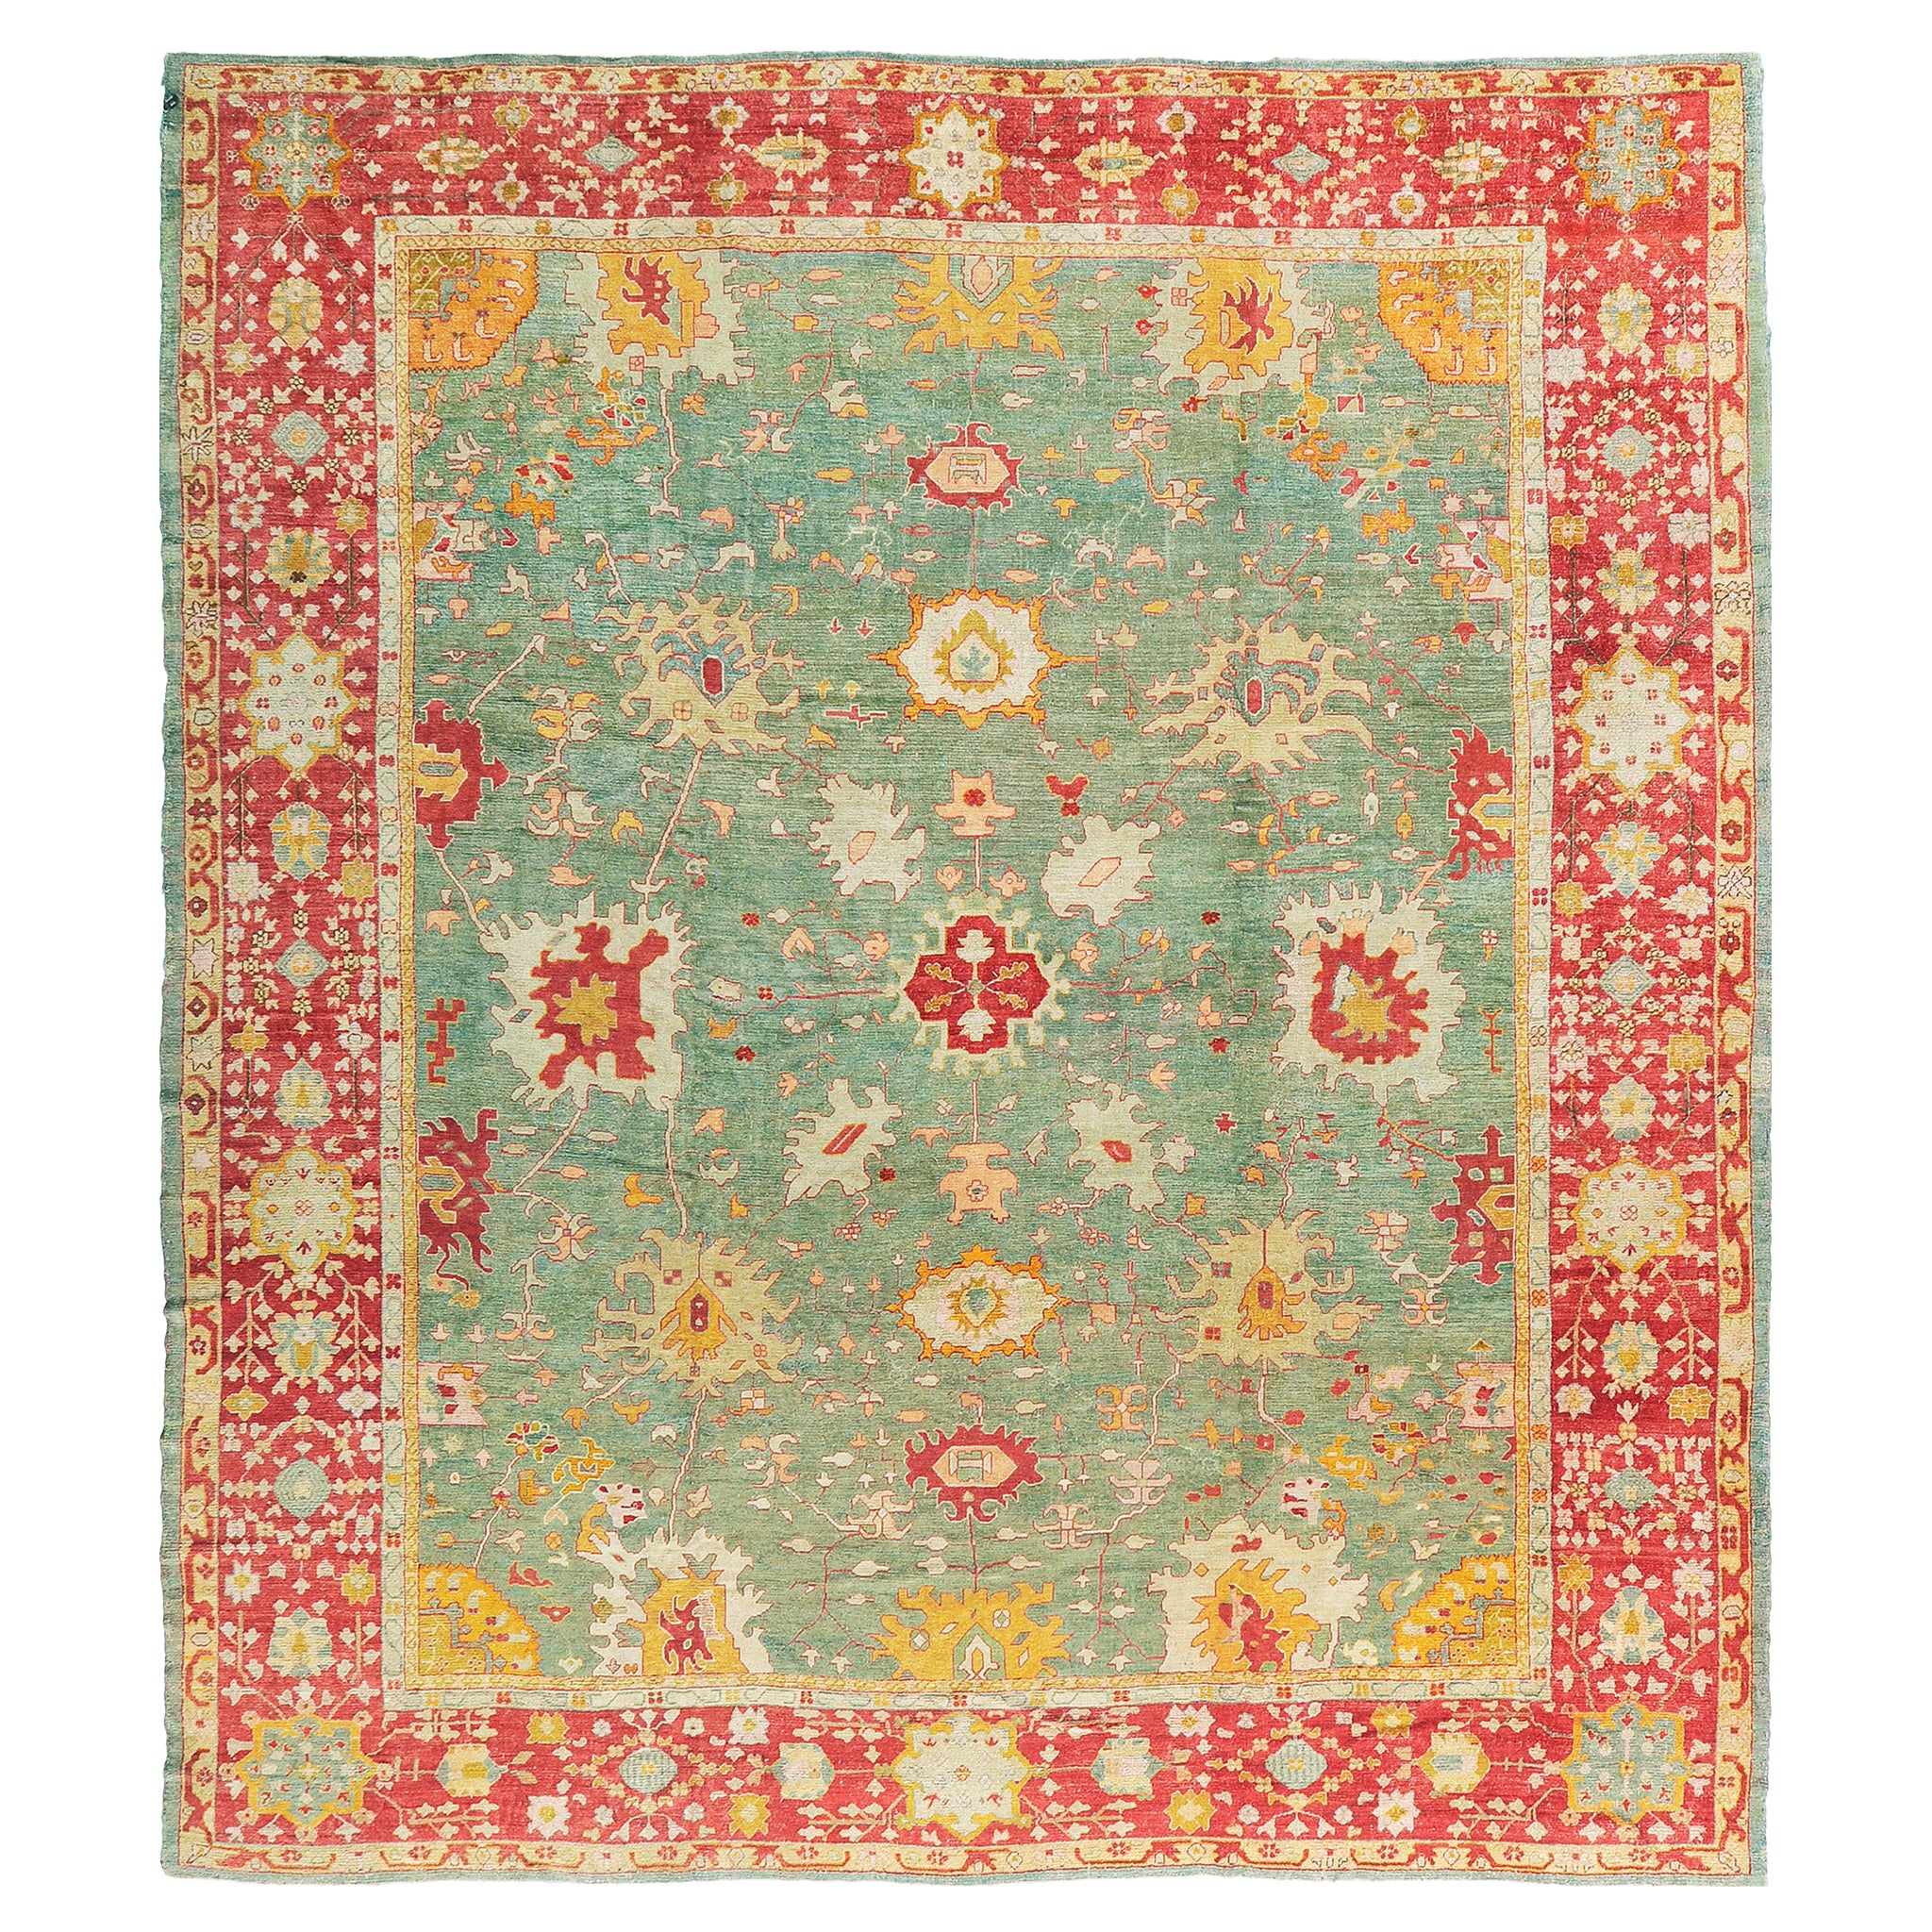 Handgewebter antiker türkischer Angora- Oushak-Teppich aus dem 19. Jahrhundert